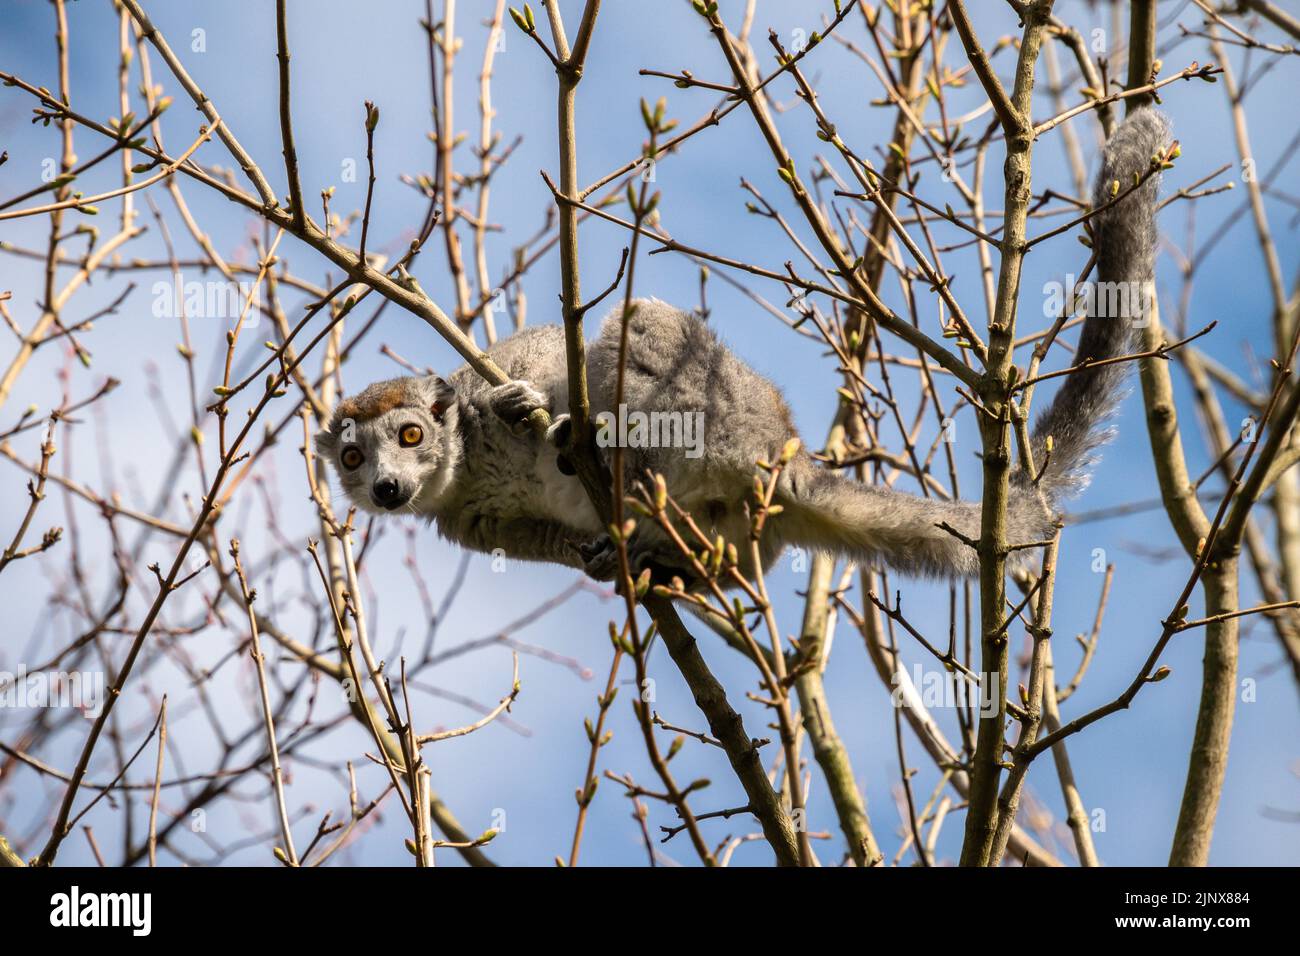 Limur incoronato che arrampica su un albero alla ricerca di cibo, lo zoo di Edimburgo Foto Stock